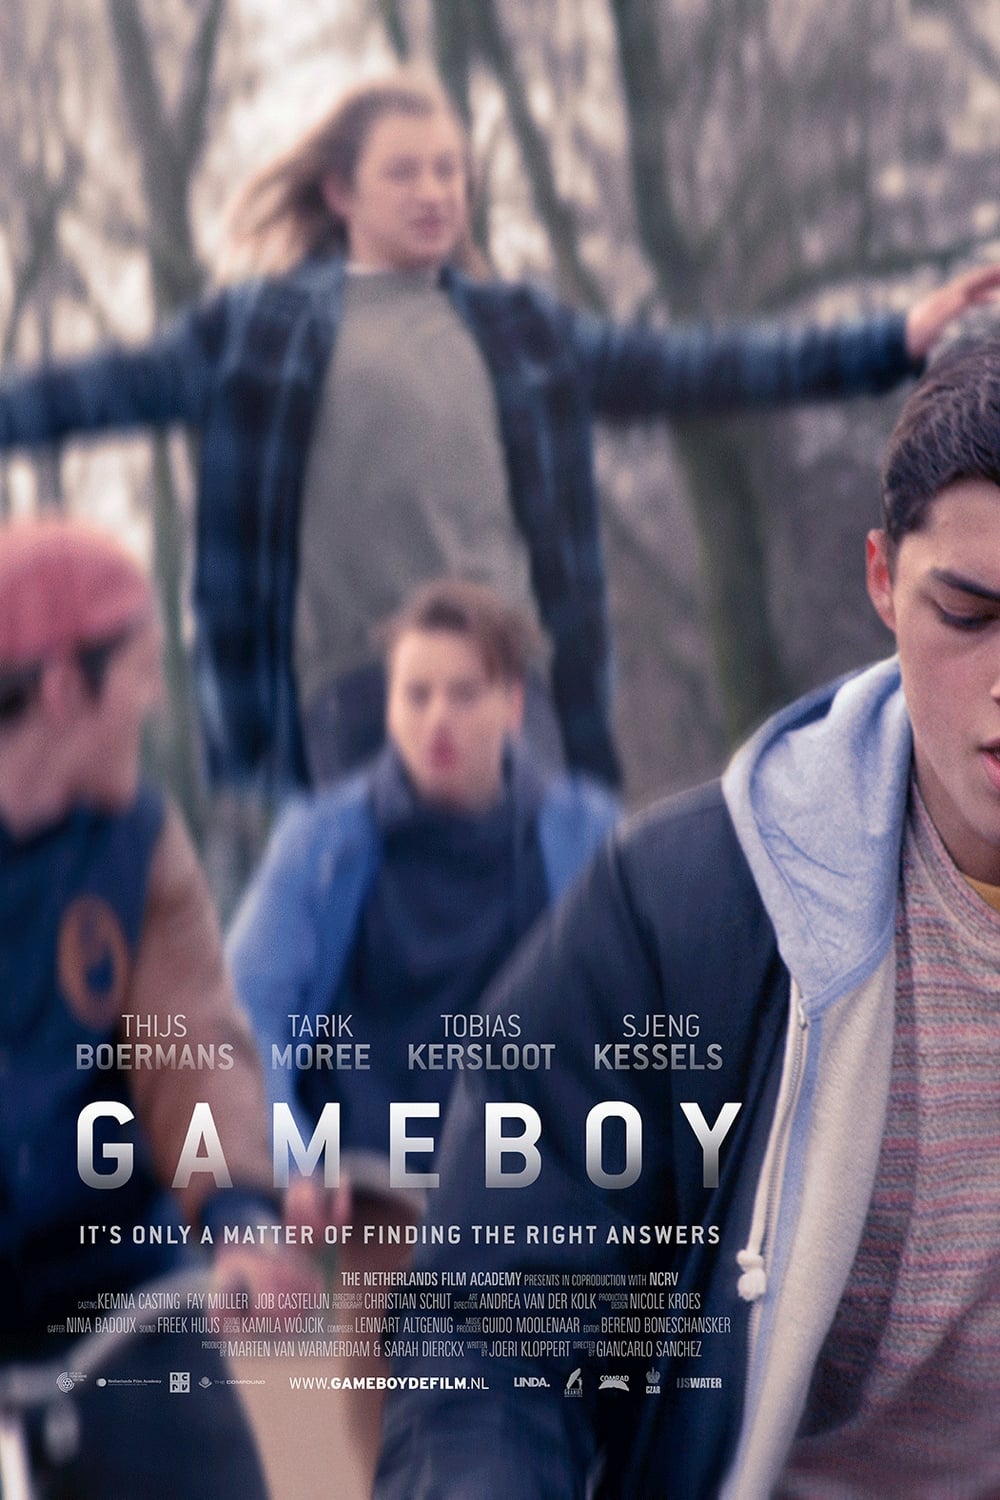 Gameboy film